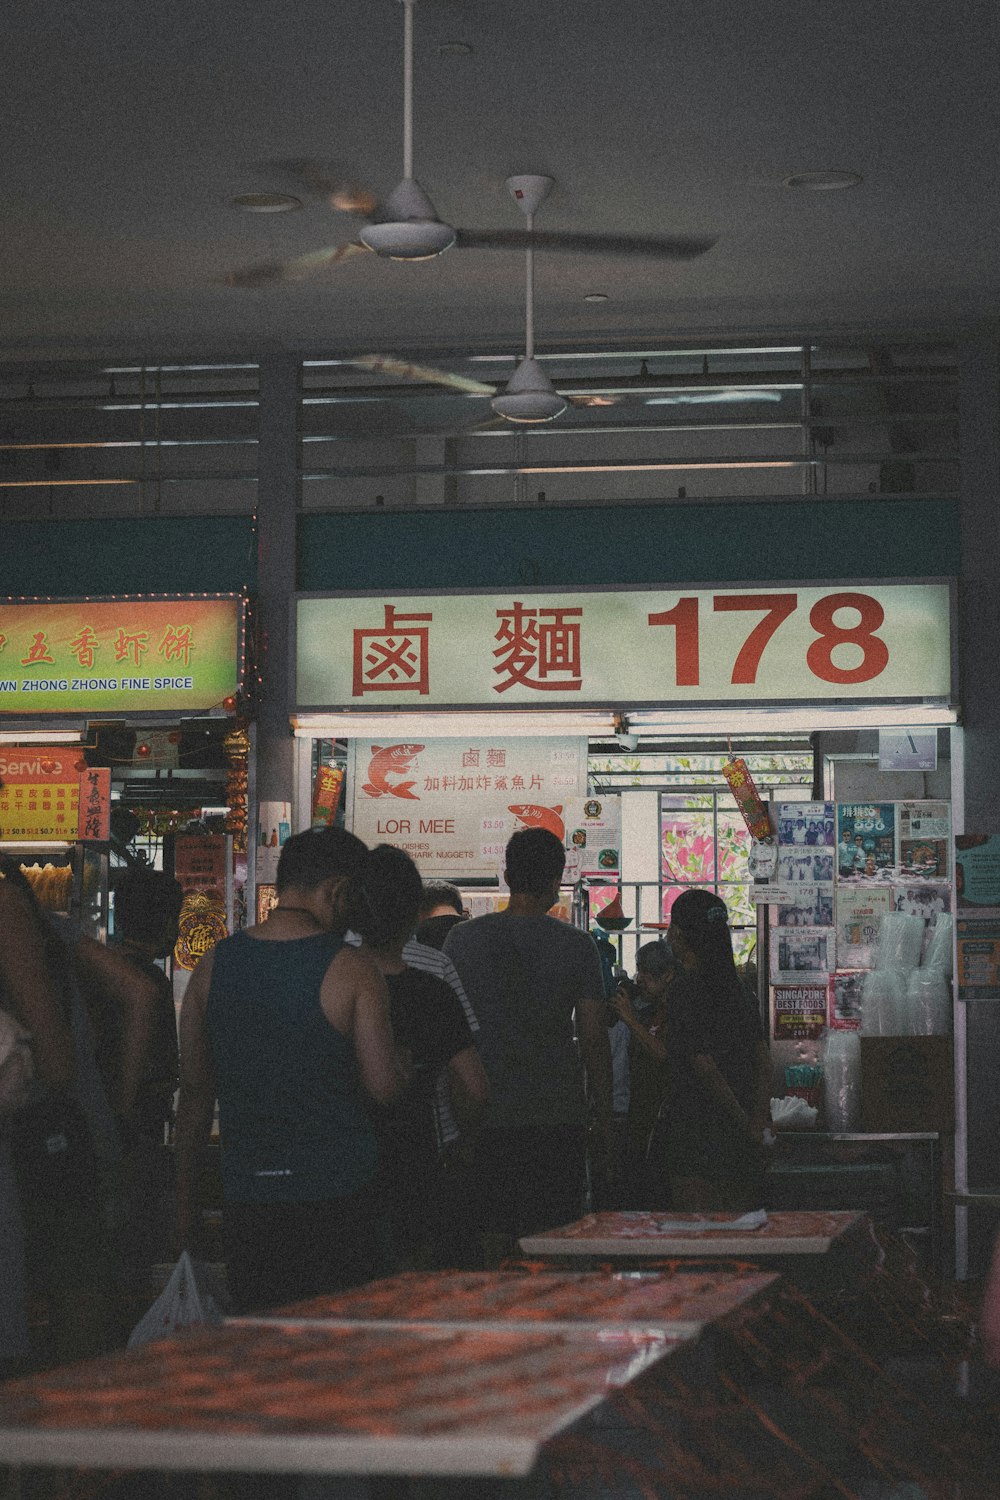 Persone in piedi vicino al negozio rosso e bianco durante la notte